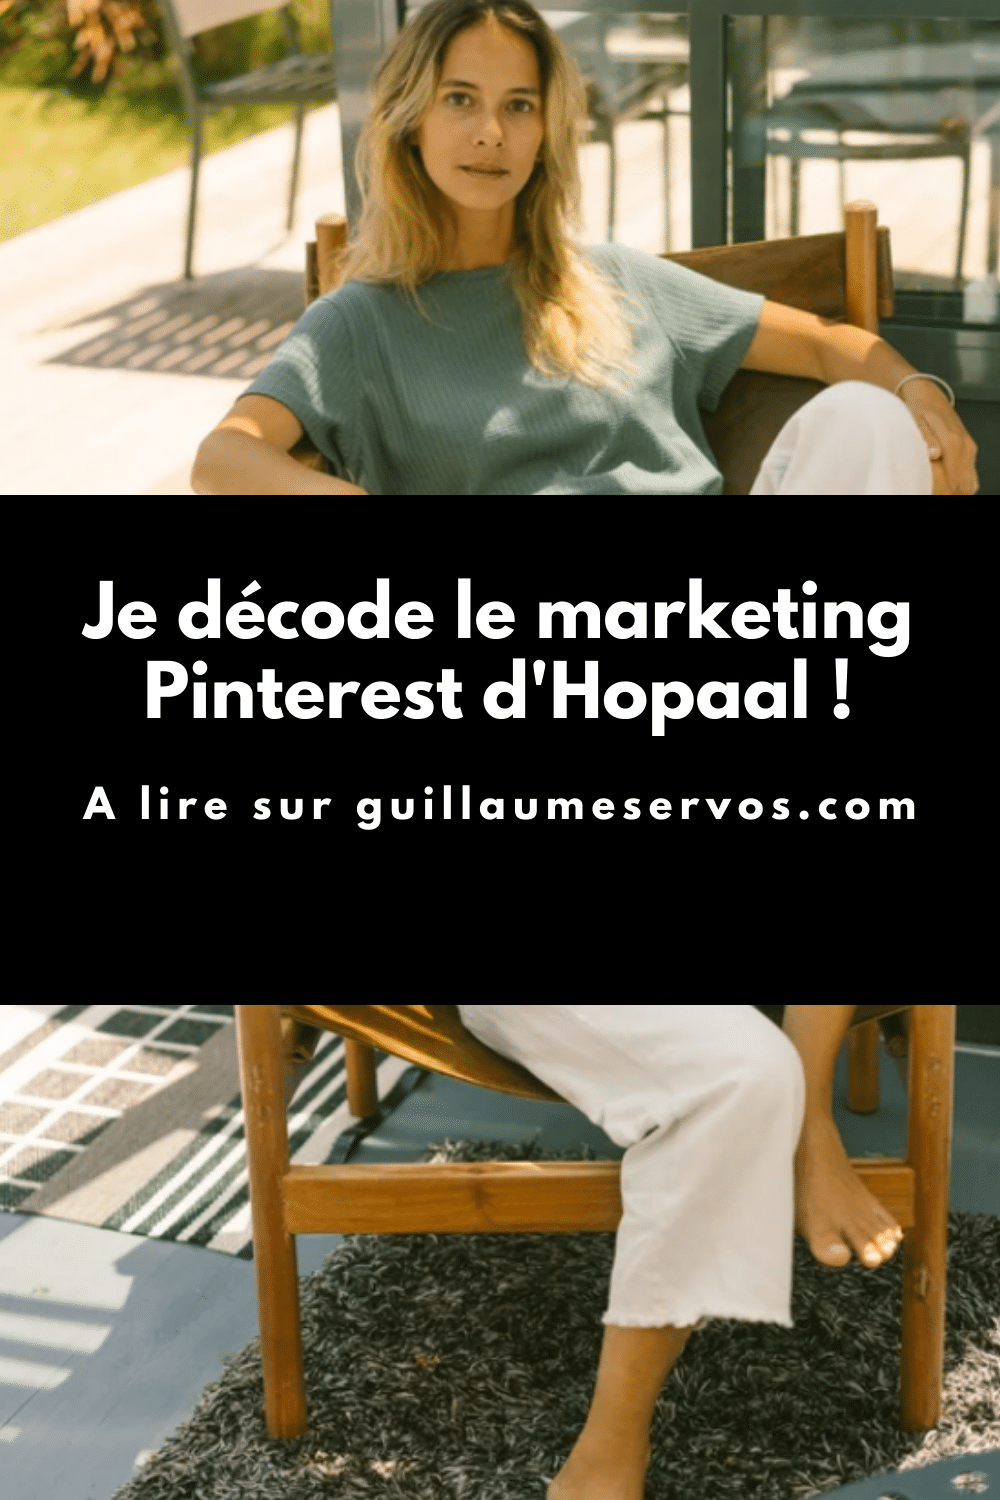 Comment Hopaal utilise Pinterest pour son business ? Je décode le marketing Pinterest de la marque qui dessine et conçoit des vêtements réalisés à partir de matières recyclées.